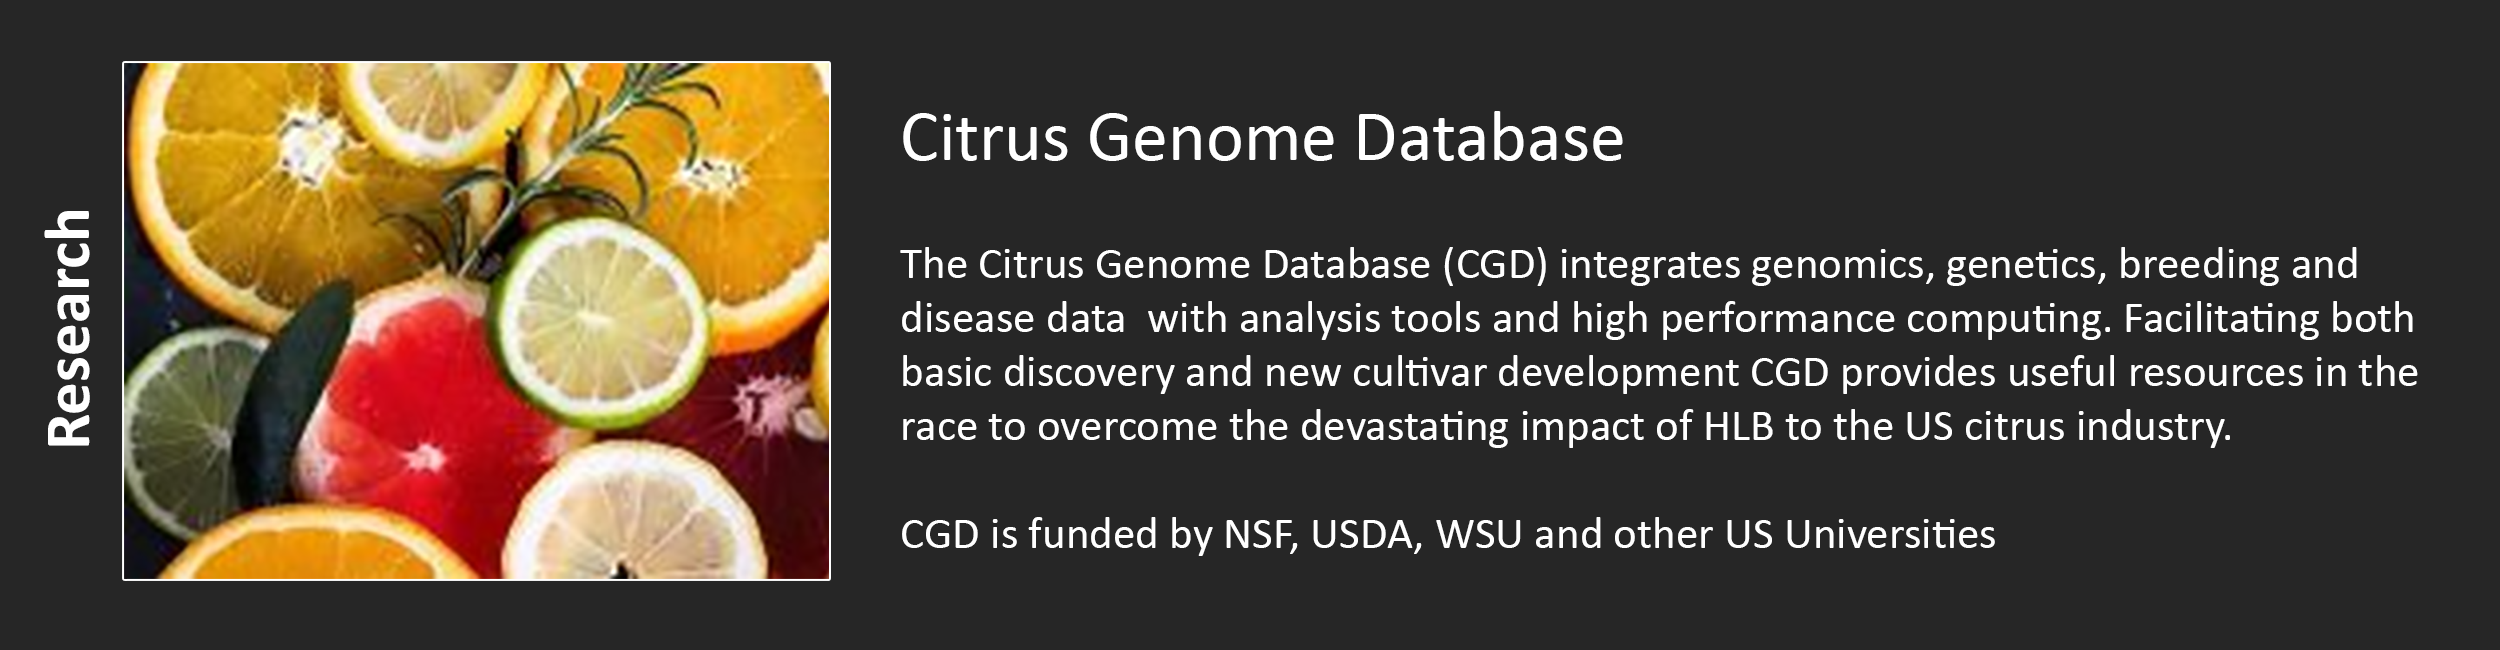 Citrus Genome Database